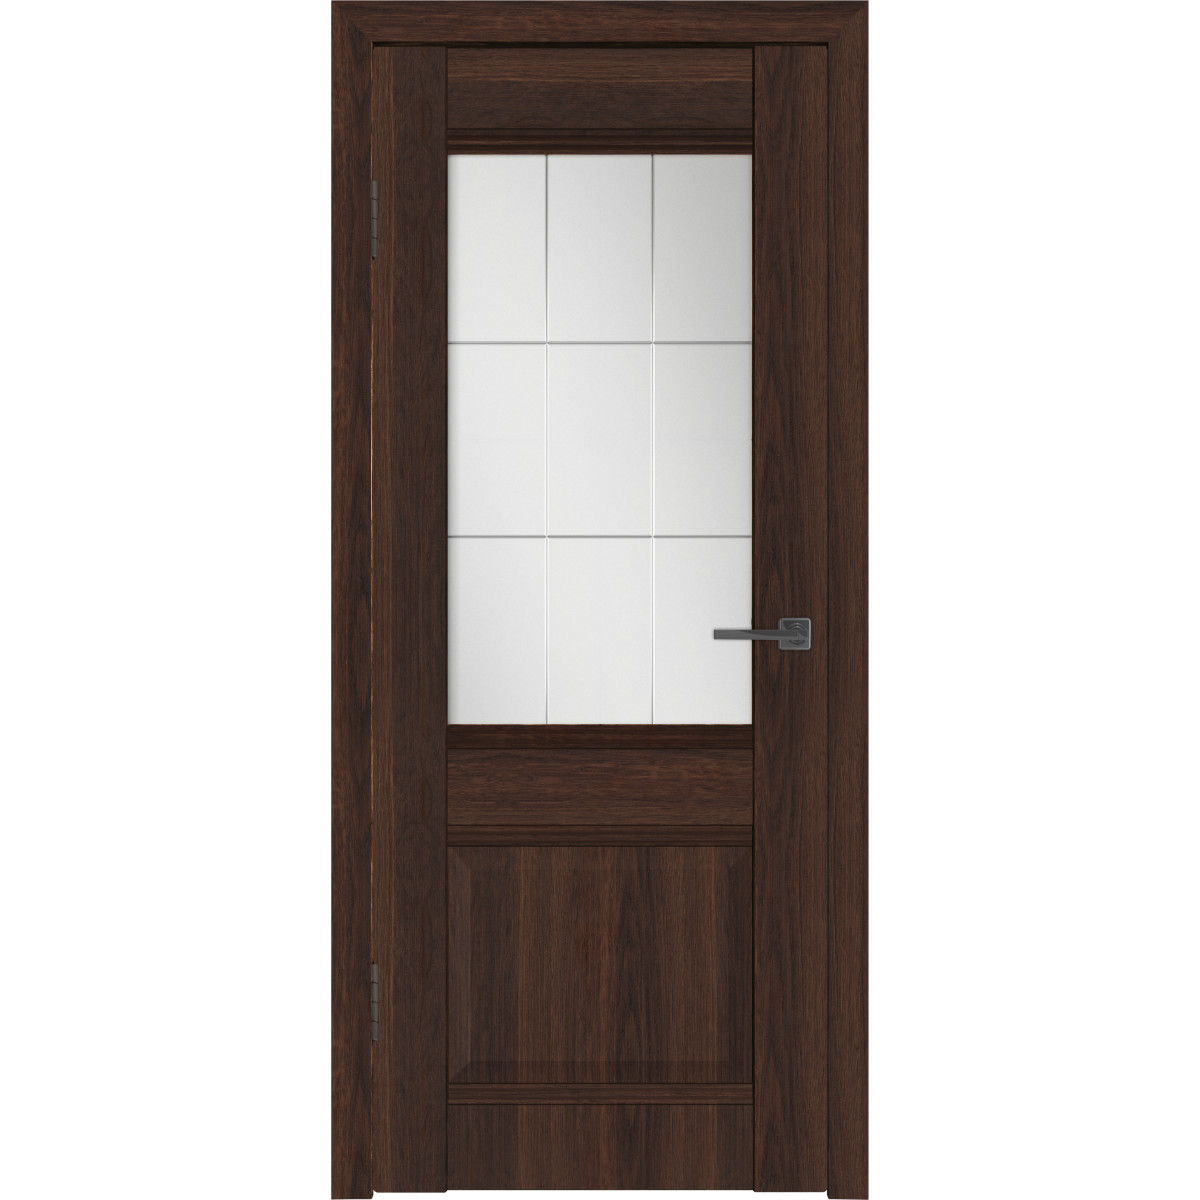 Дверь межкомнатная остекленная с замком и петлями в комплекте Классик 2 80x200 см ПВХ цвет каштан